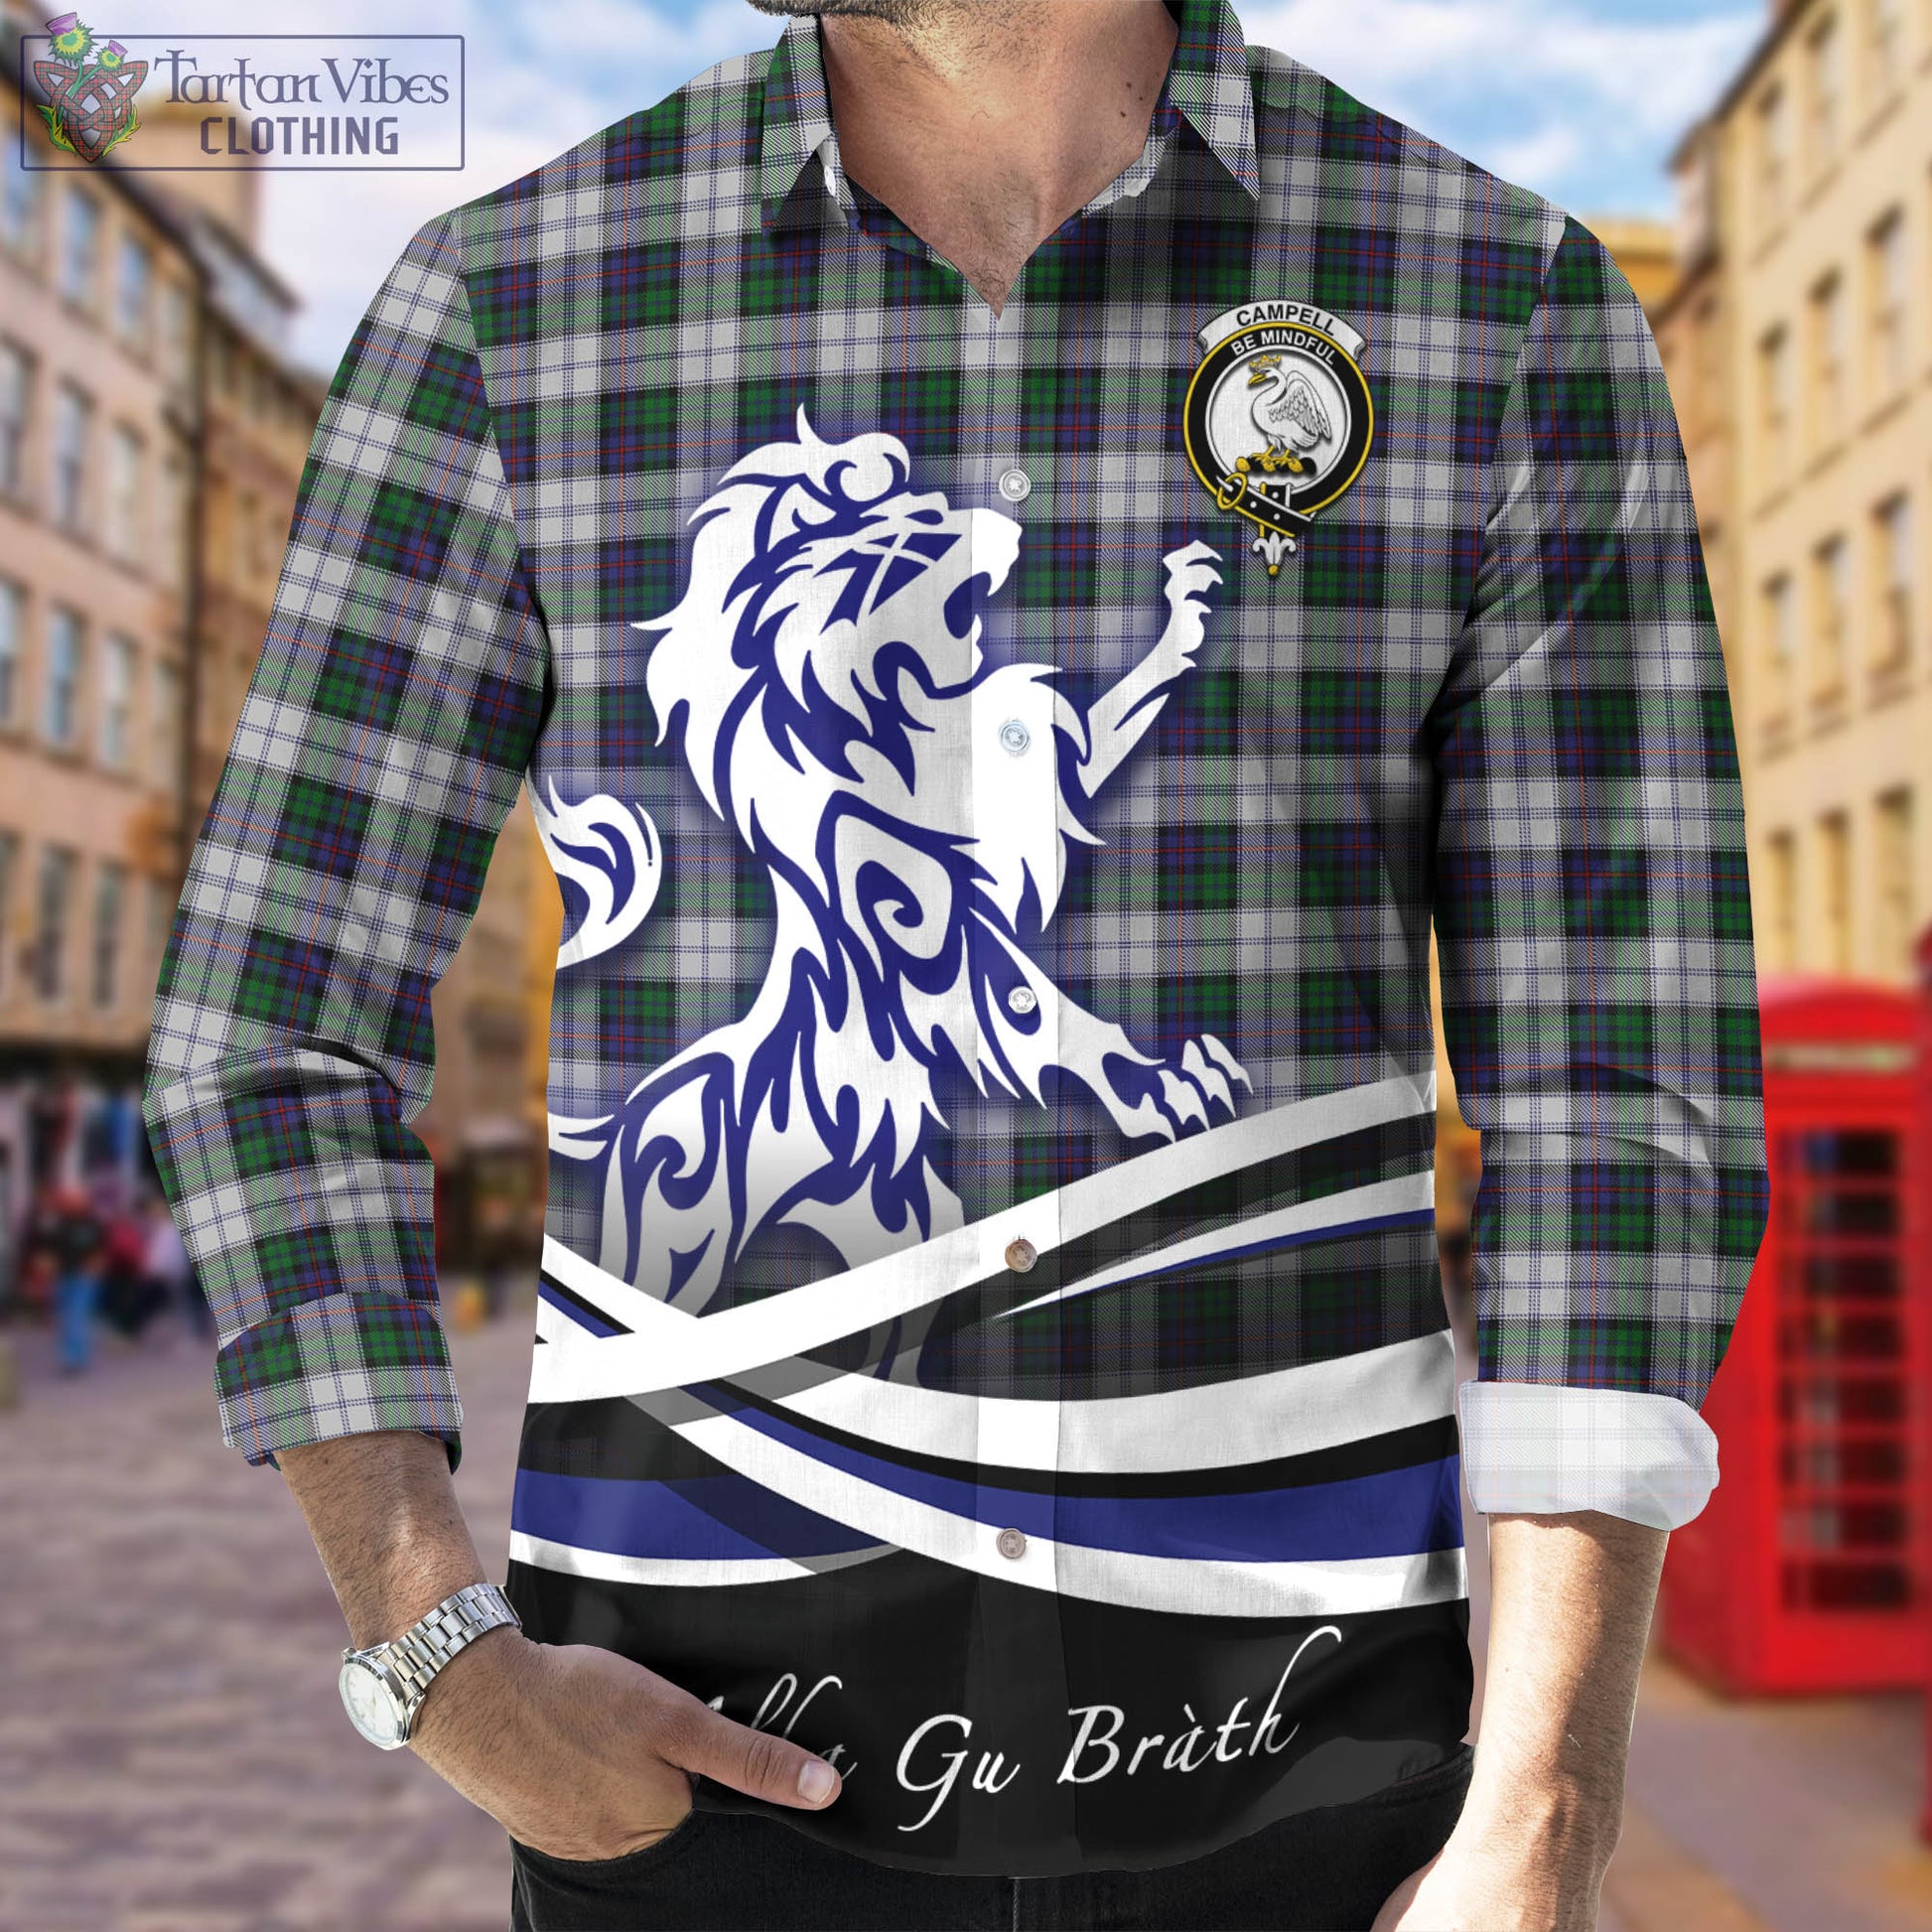 campbell-of-cawdor-dress-tartan-long-sleeve-button-up-shirt-with-alba-gu-brath-regal-lion-emblem